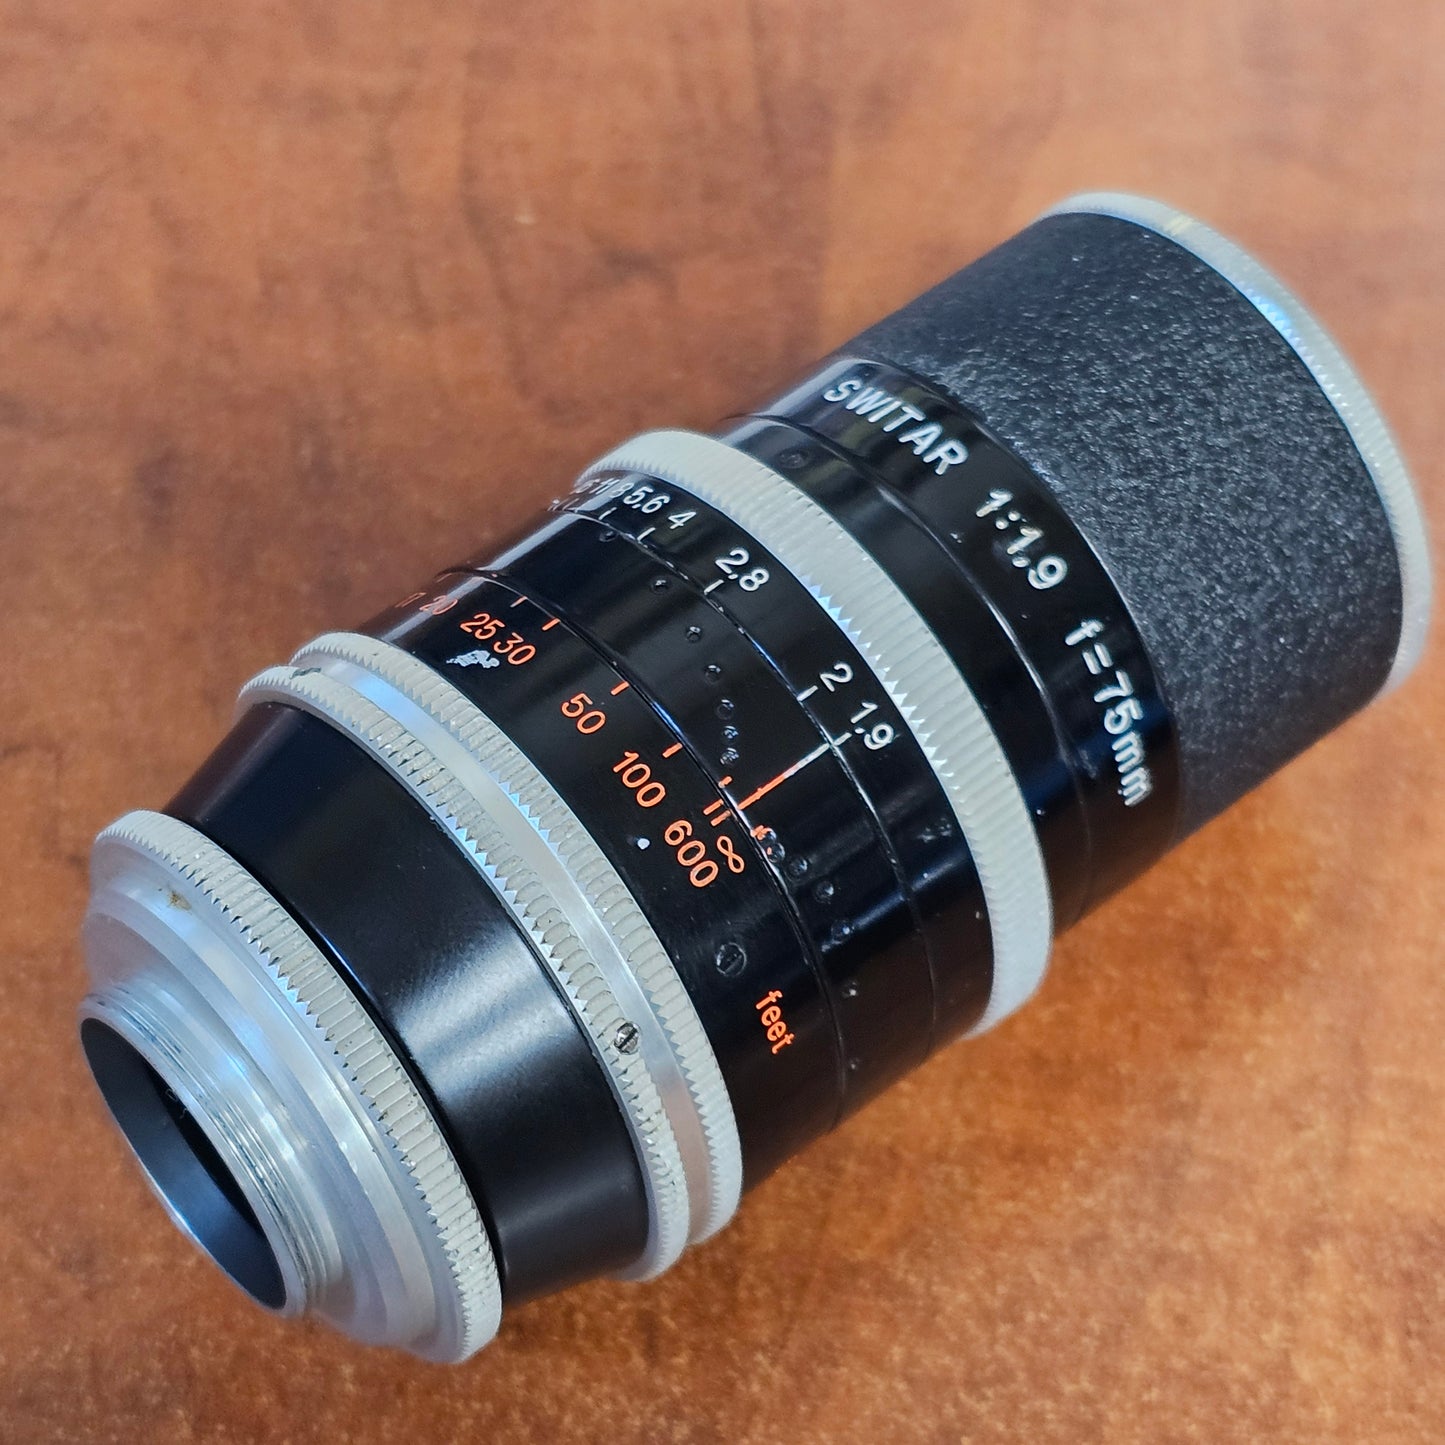 Switar 75mm f1.9 C-Mount Lens S# 1061376